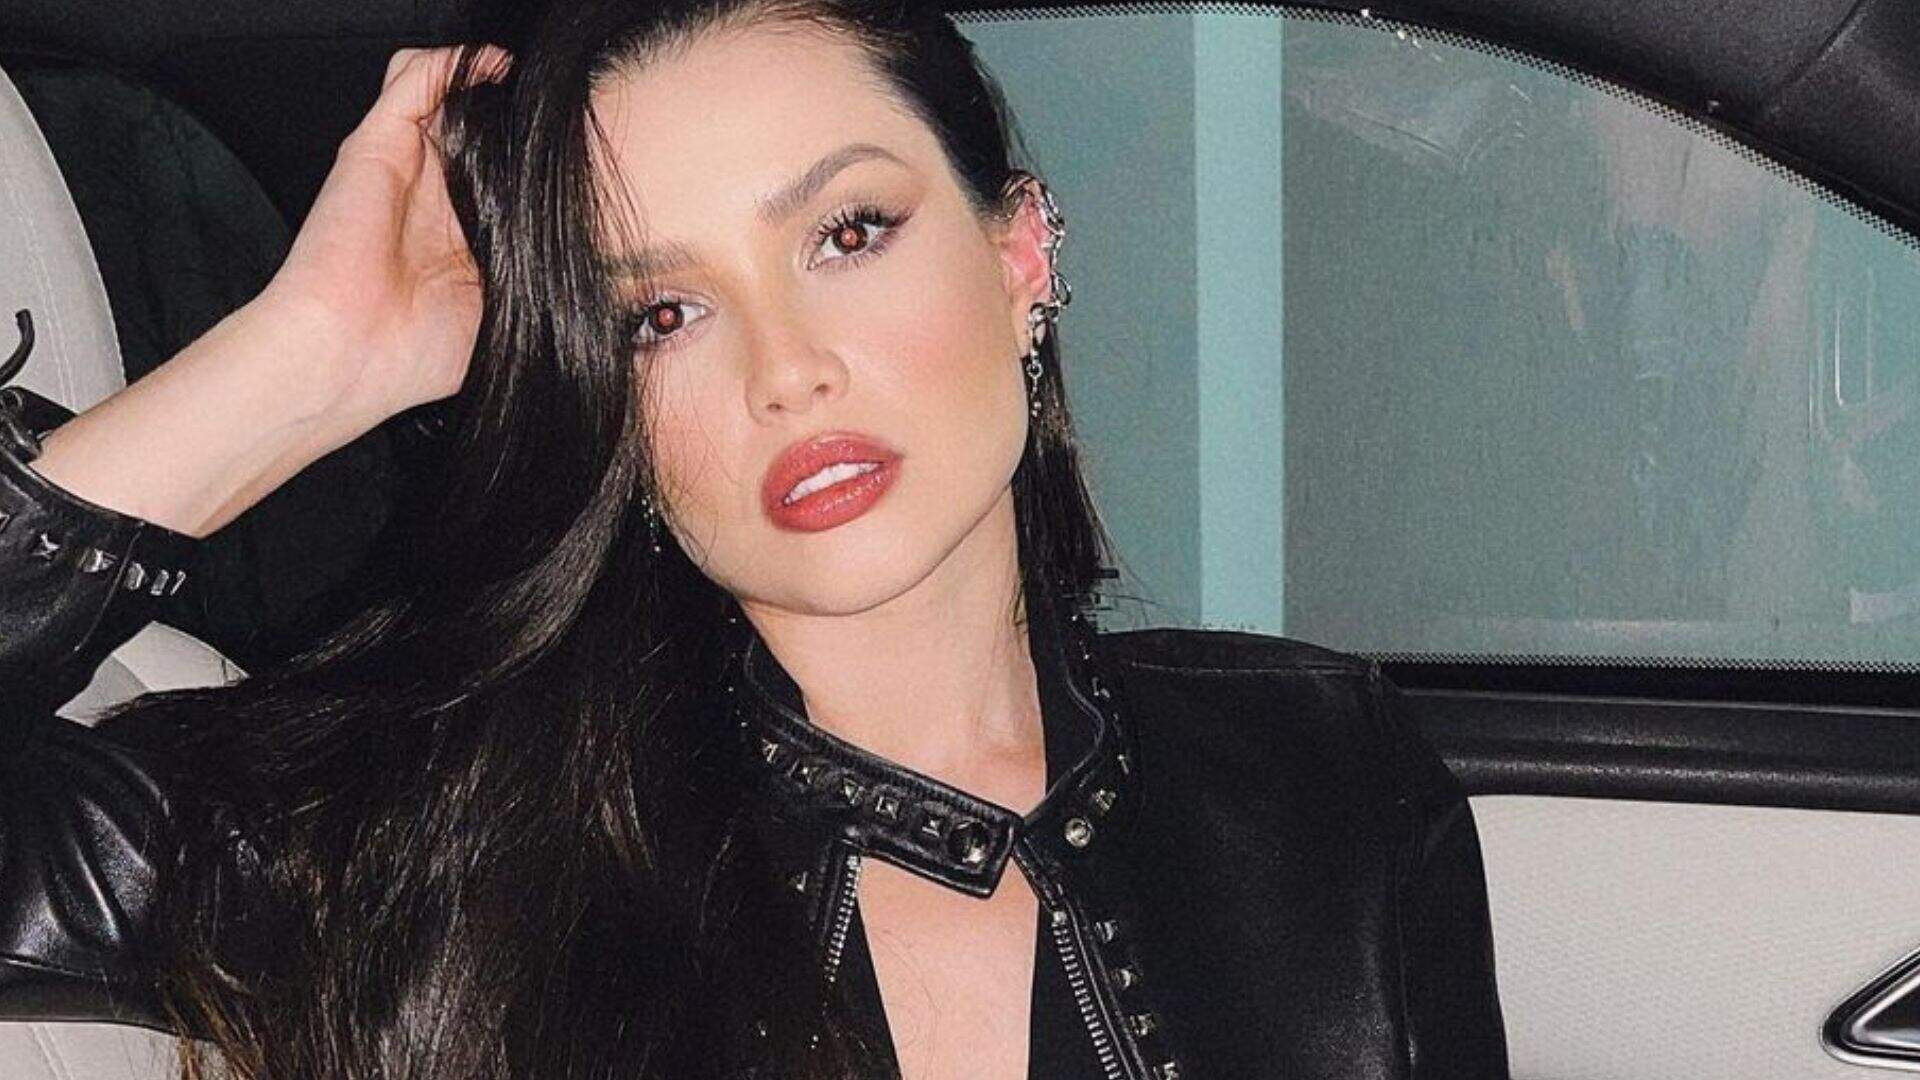 Juliette surpreende fãs com mudança de visual: “Toda Kardashian” - Metropolitana FM